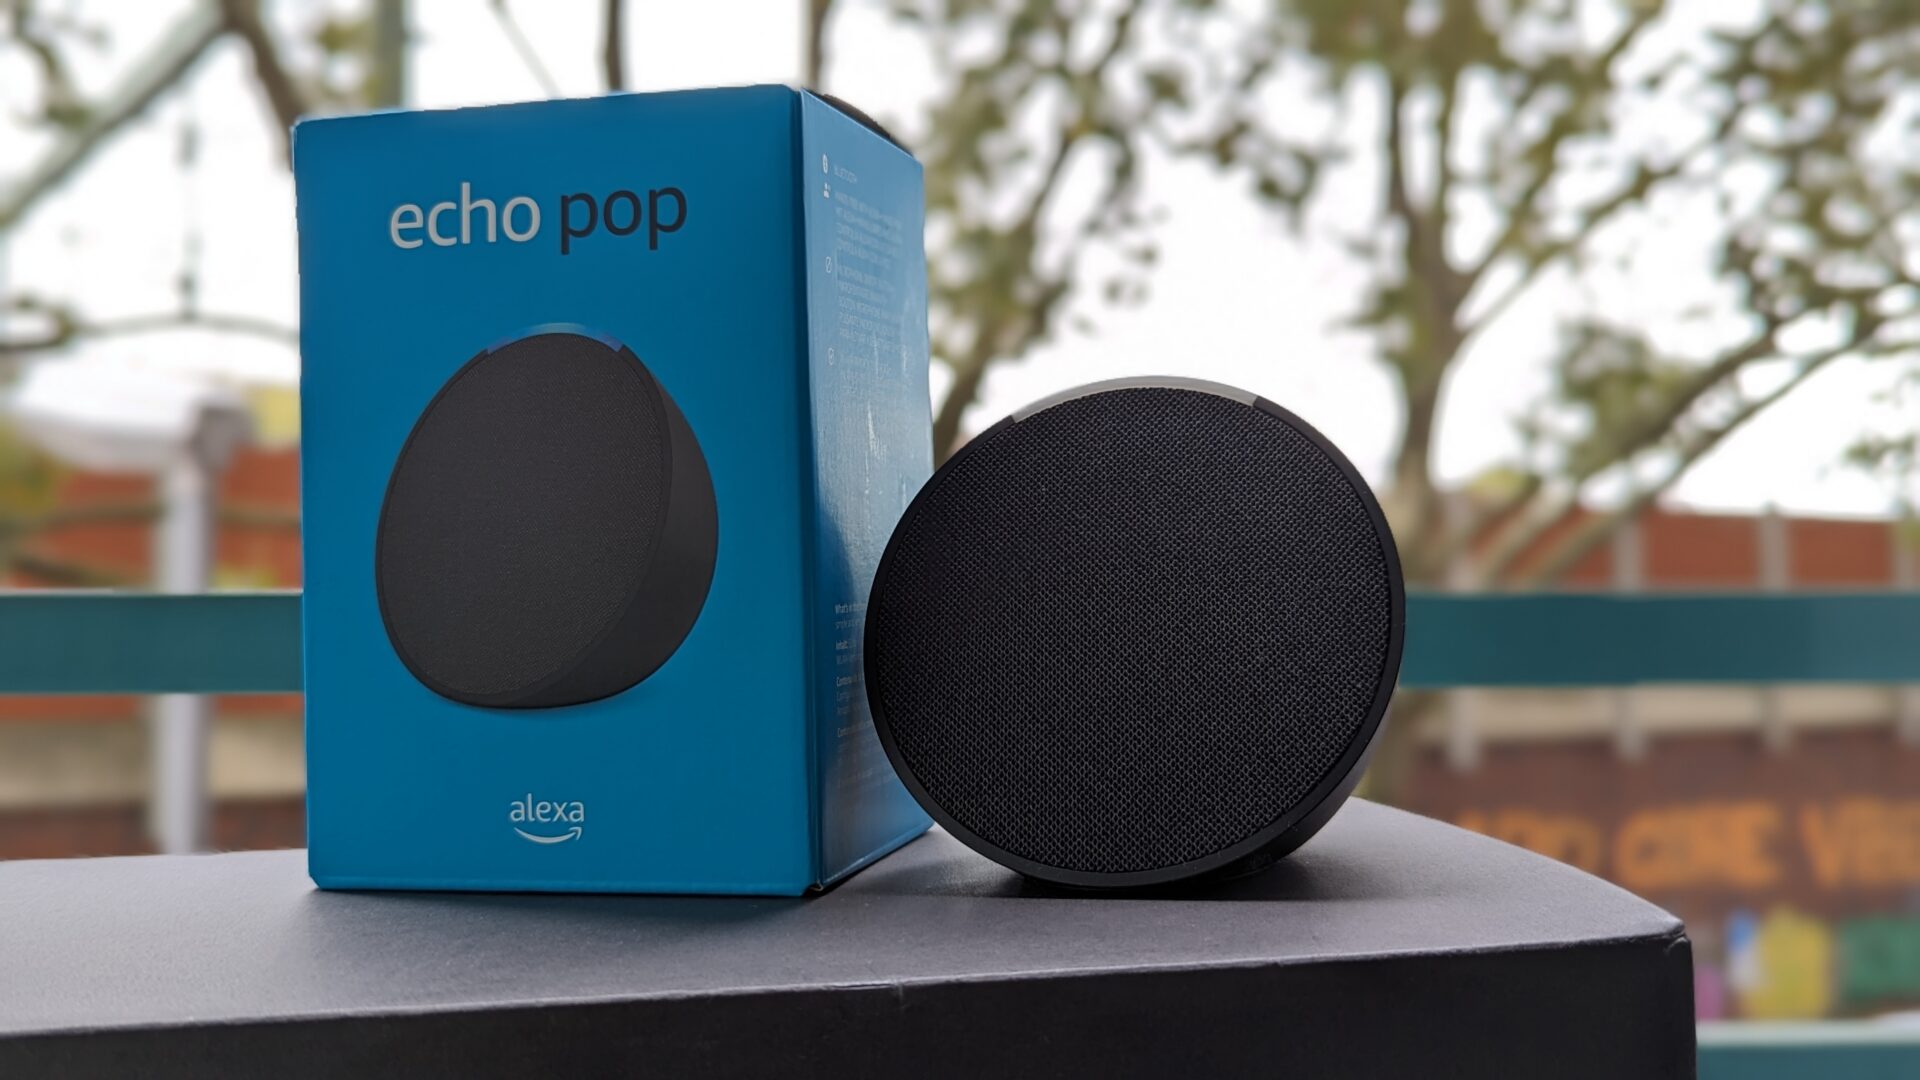 Ein Amazon Alexa Echo Pop als Gerät und Verpackung.